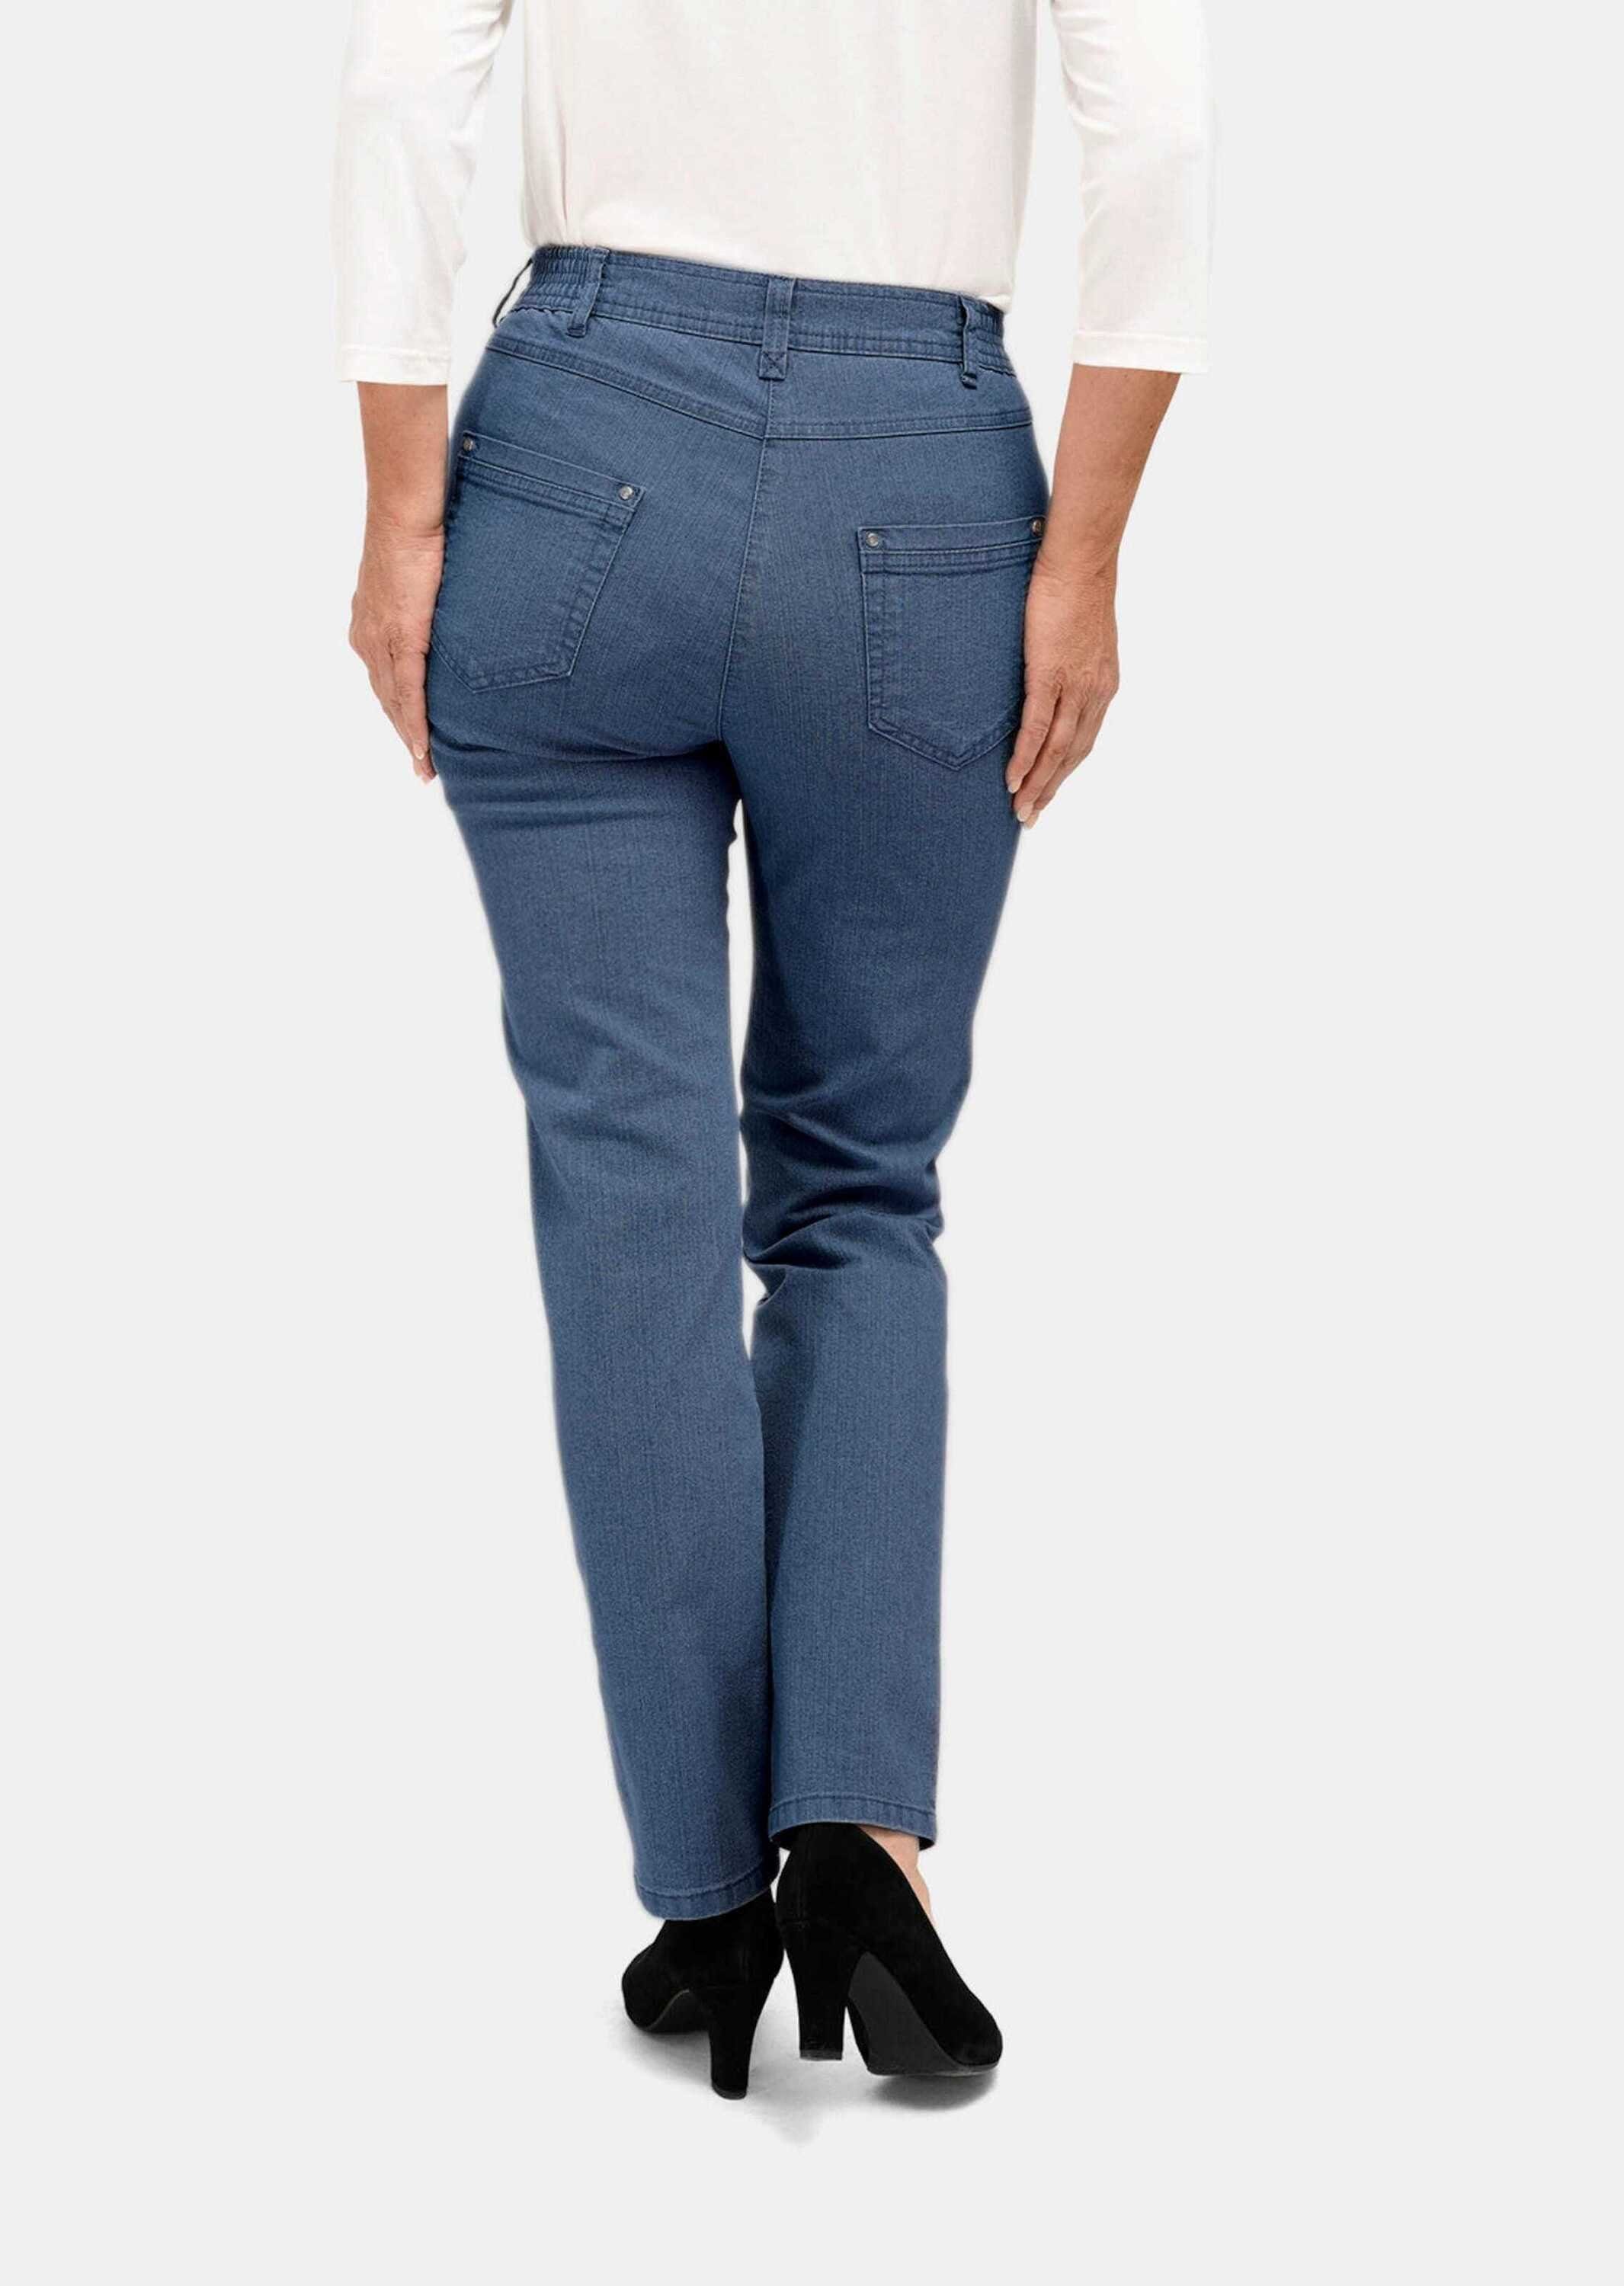 Jeanshose ANNA hellblau GOLDNER Klassische Bequeme Jeans Kurzgröße: